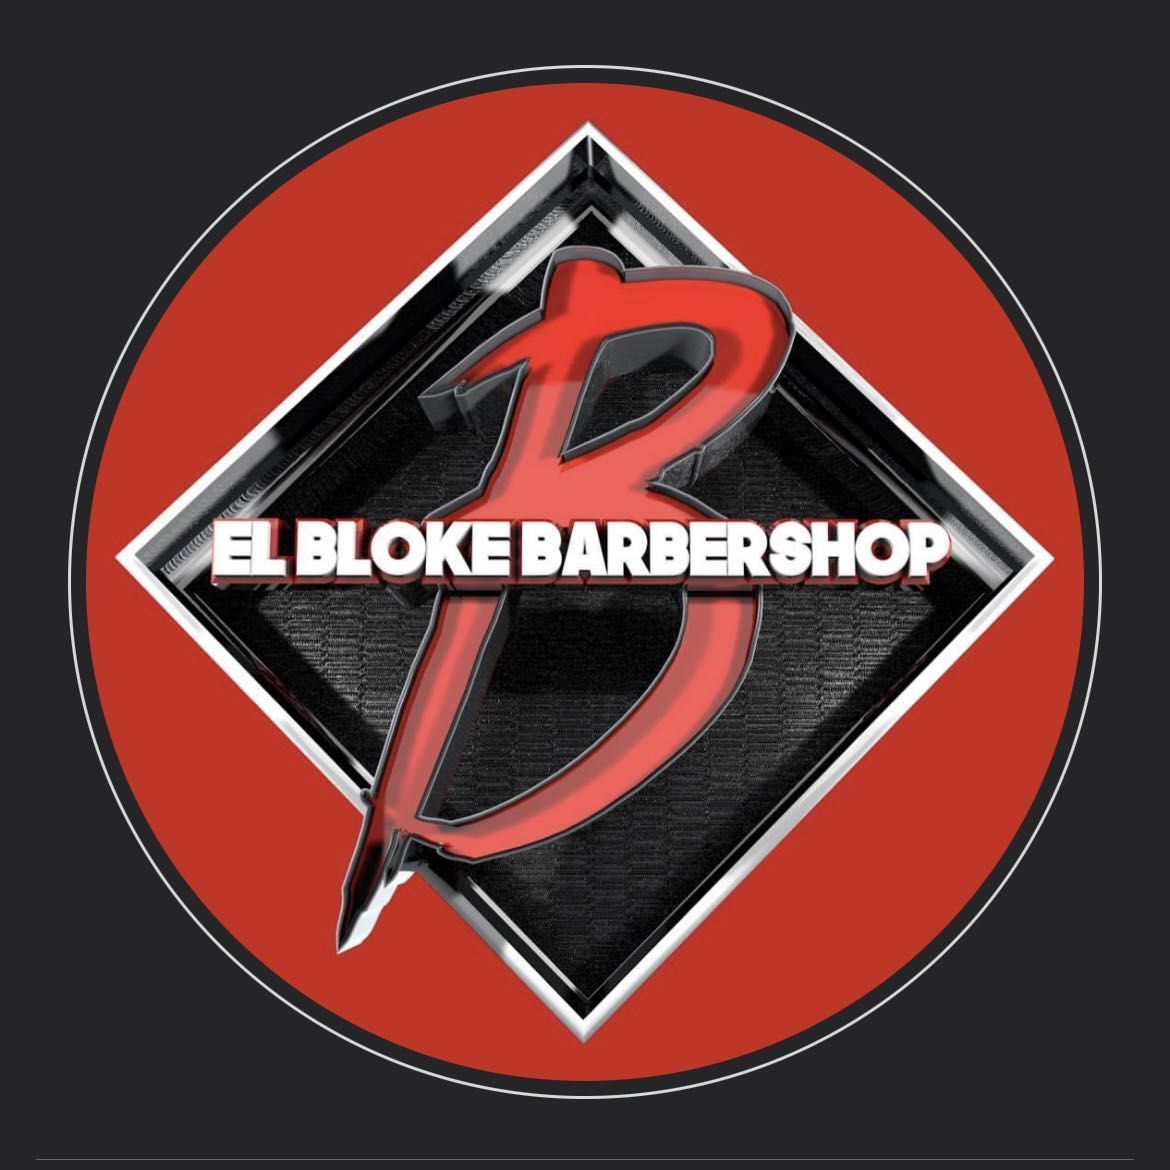 El Bloke Barbershop, 16942 S Dixie Hwy, Miami, 33157